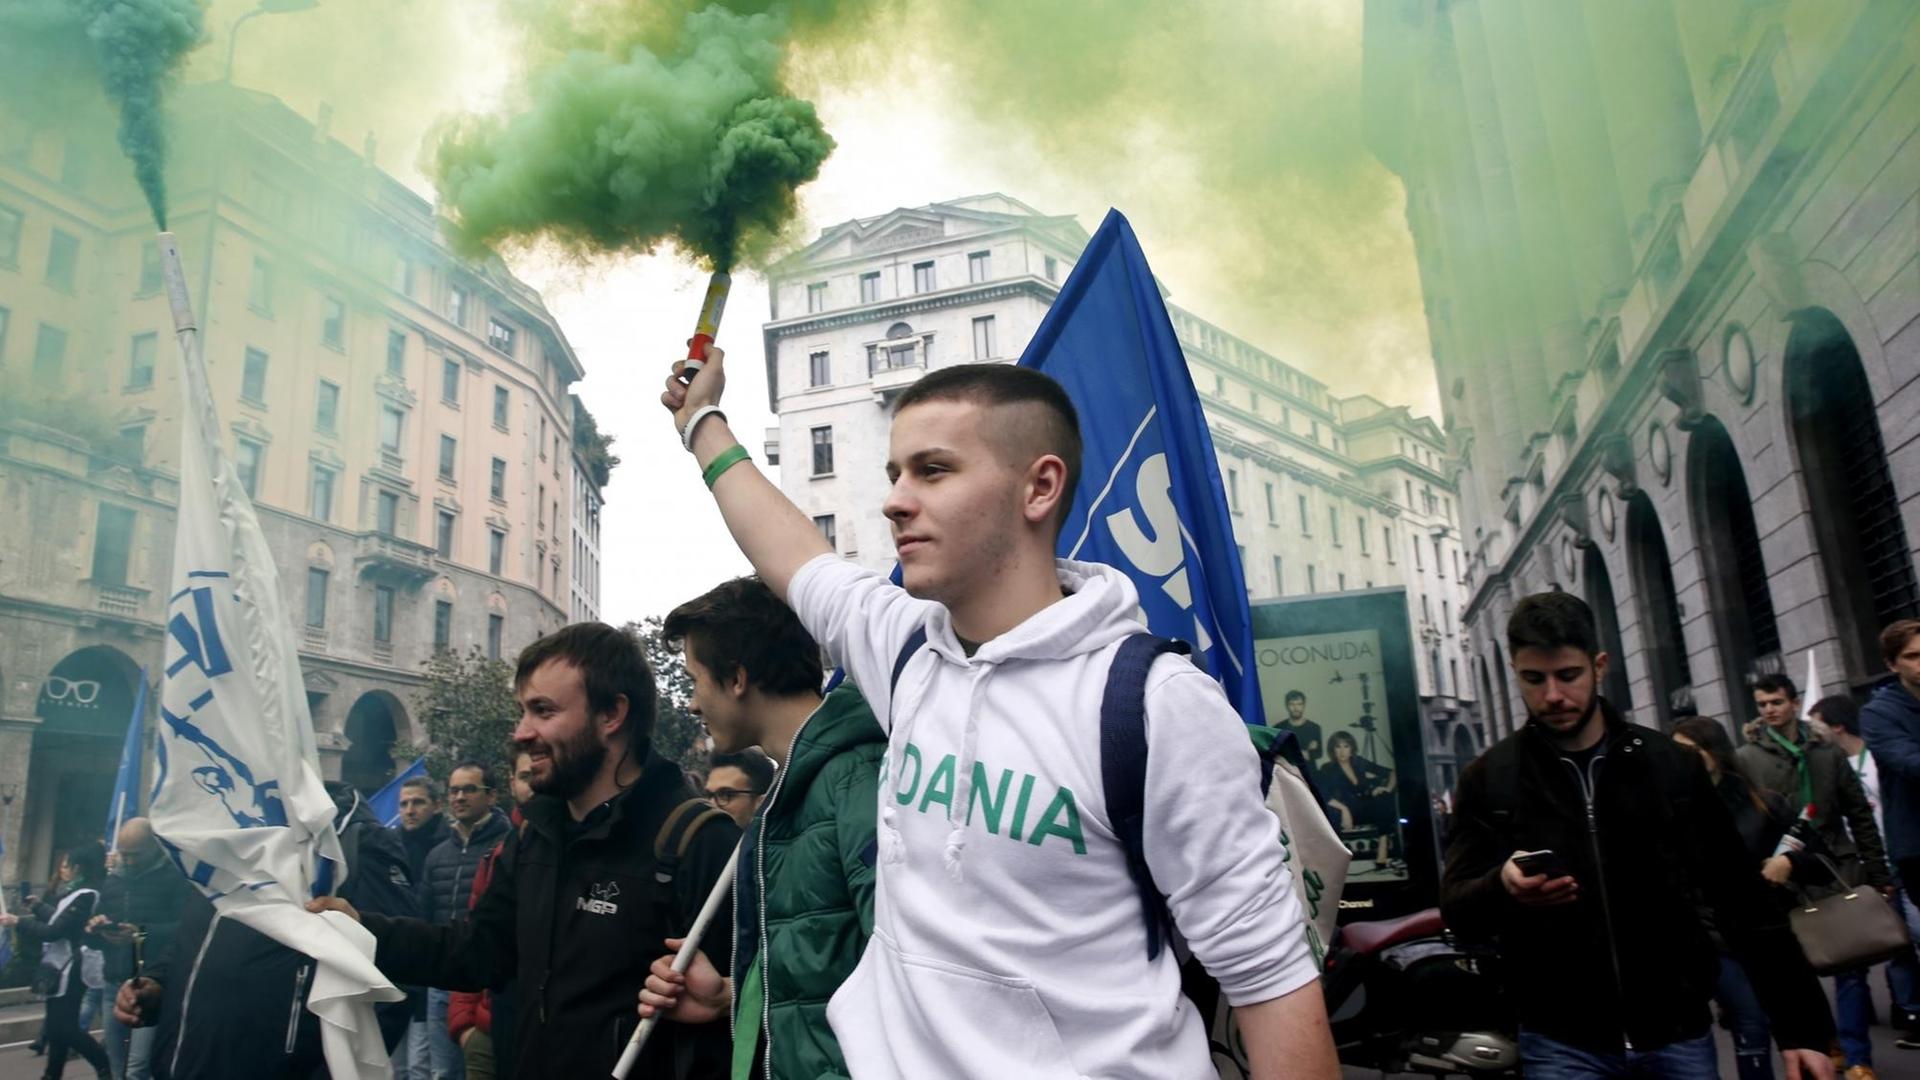 Ein junger Mann im Kapuzenpulli, ein Aktivist der rechtspopulistischen Partei Lega, hält bei einer Demonstration eine Rauchfackel in die Höhe. Im Hintgergrund Flaggen, Rauch und weitere Demonstranten.